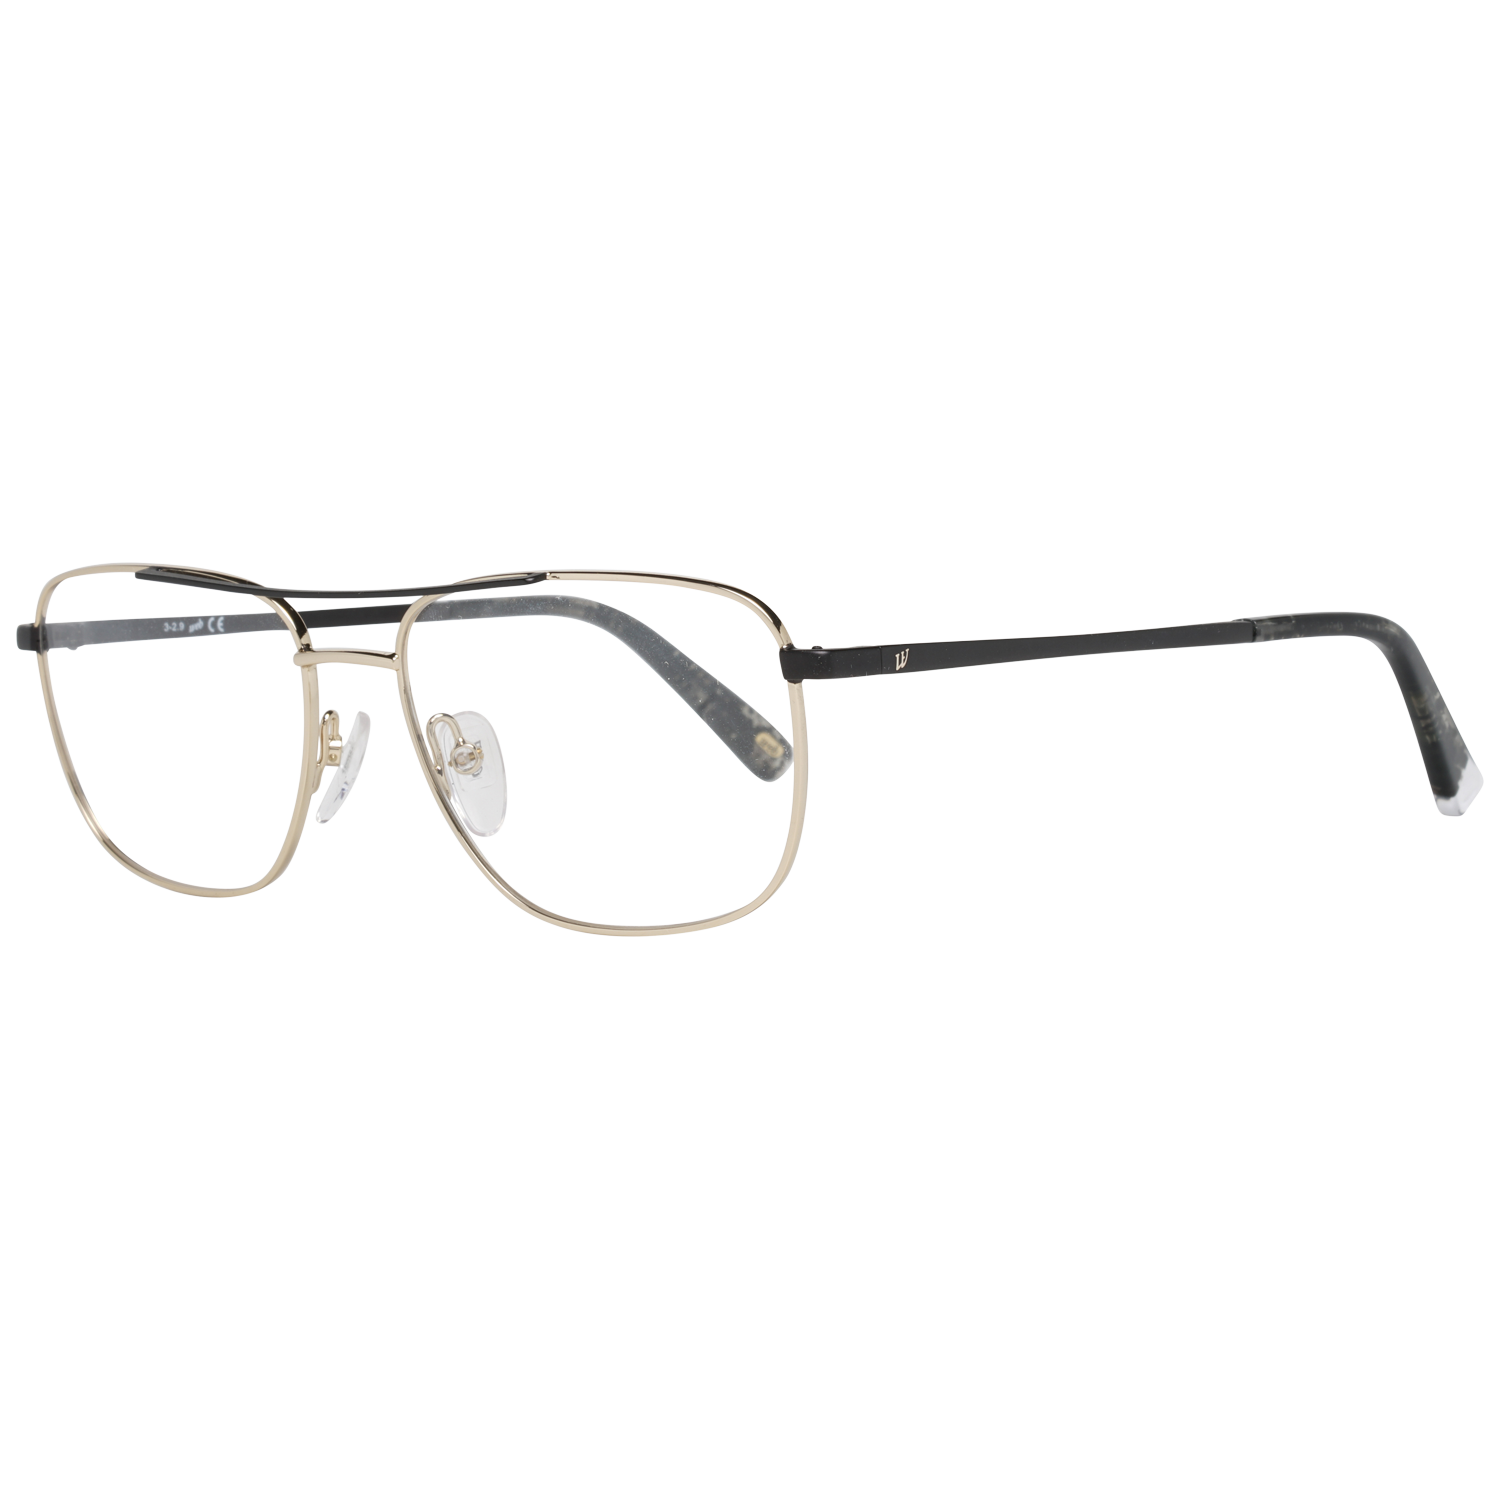 Web Frames Web Optical Frame WE5318 032 55 Eyeglasses Eyewear UK USA Australia 